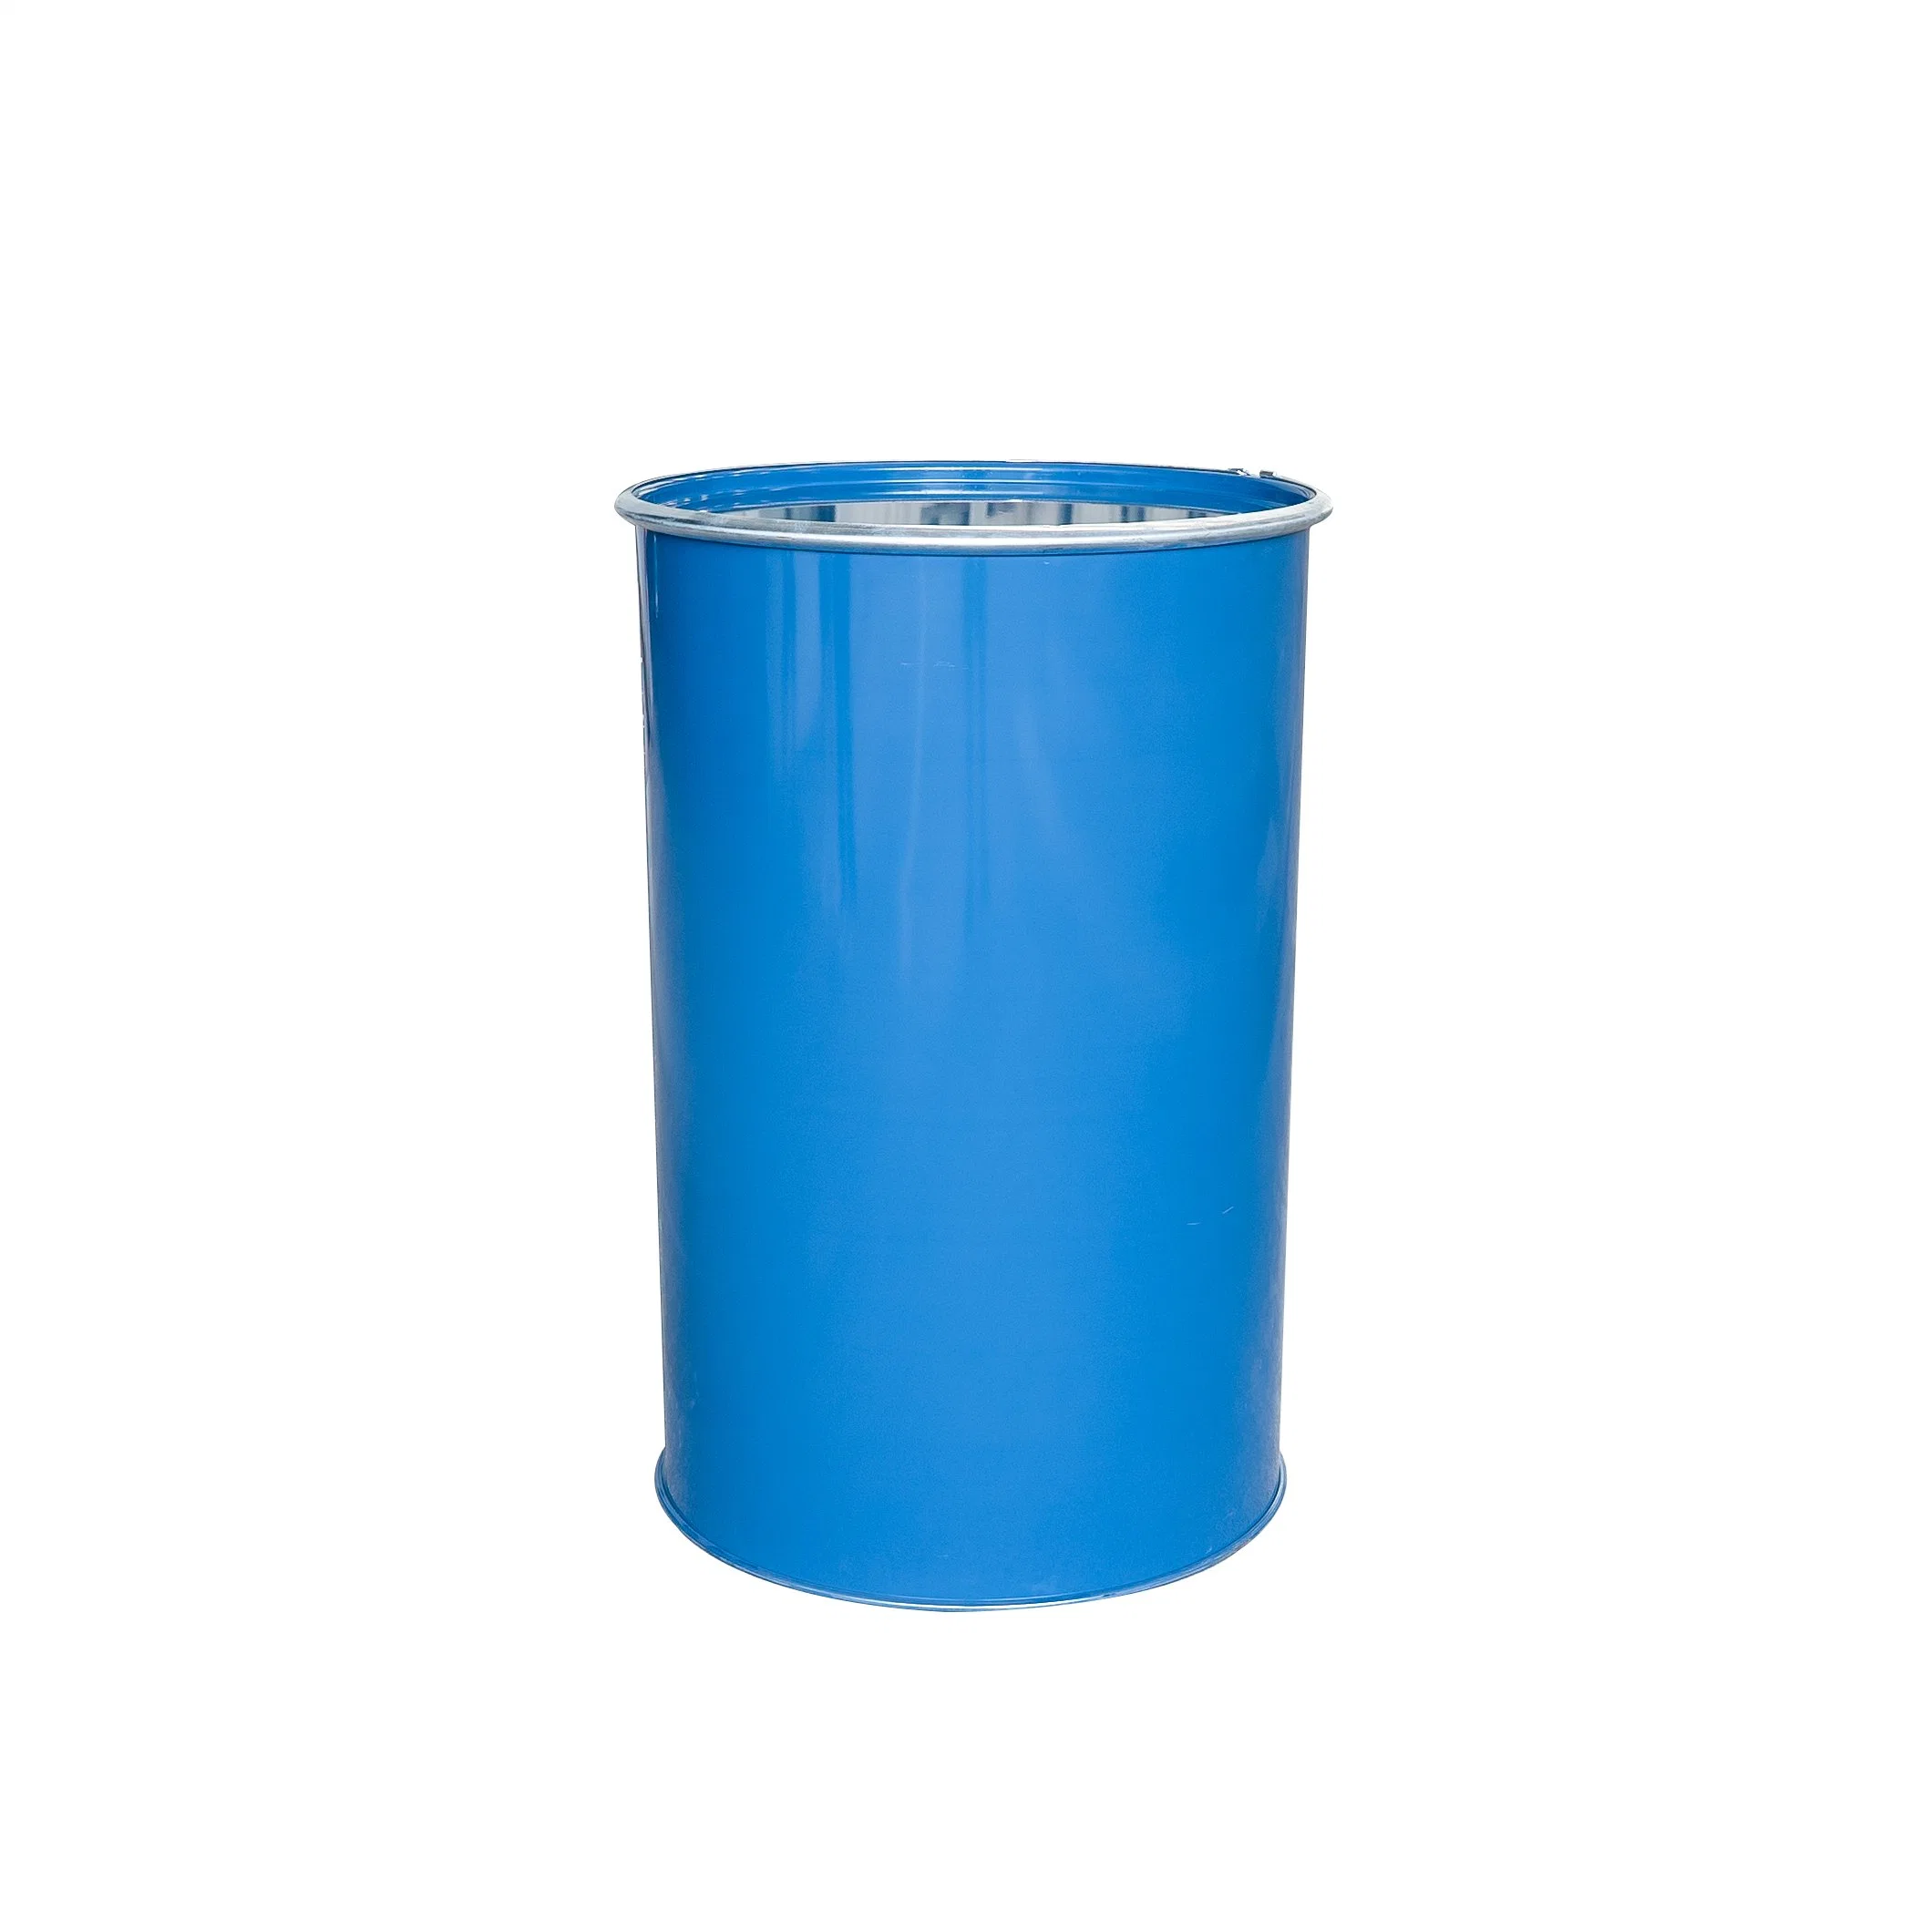 Эпоксидный клей клеи и герметики эпоксидной смолы клеи герметик 200L Blue барабаны стекле силиконовый герметик уксусный силиконового герметика